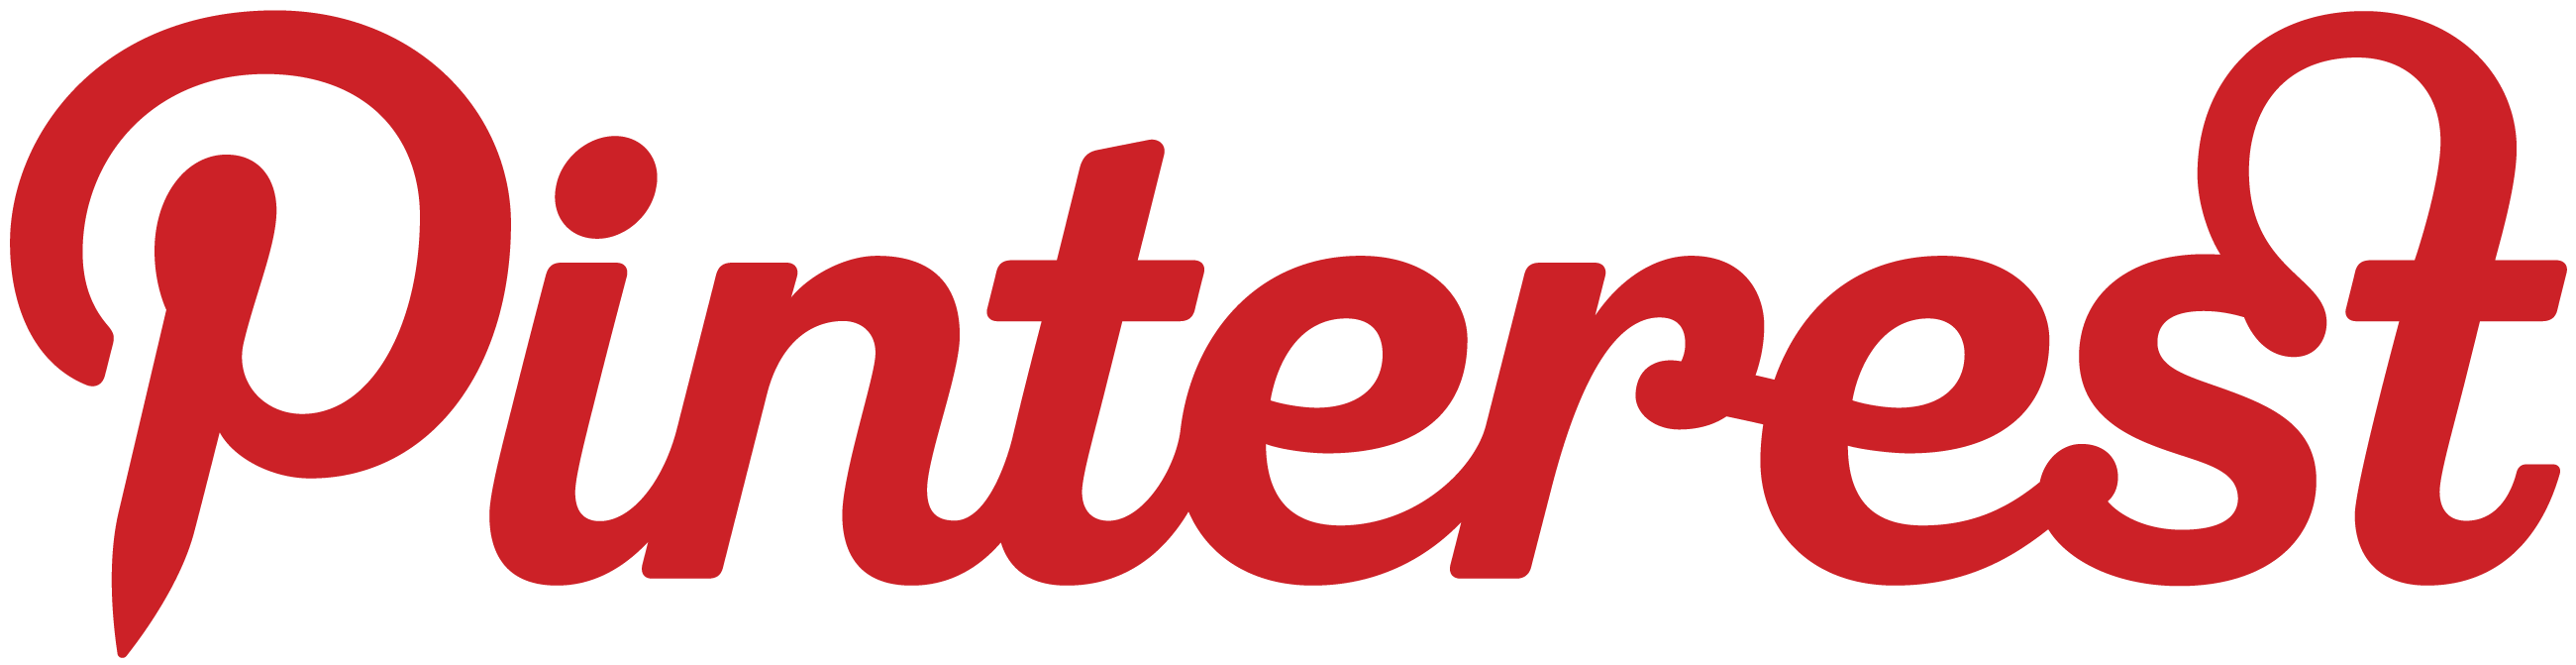 Pinterest_Logo_Red